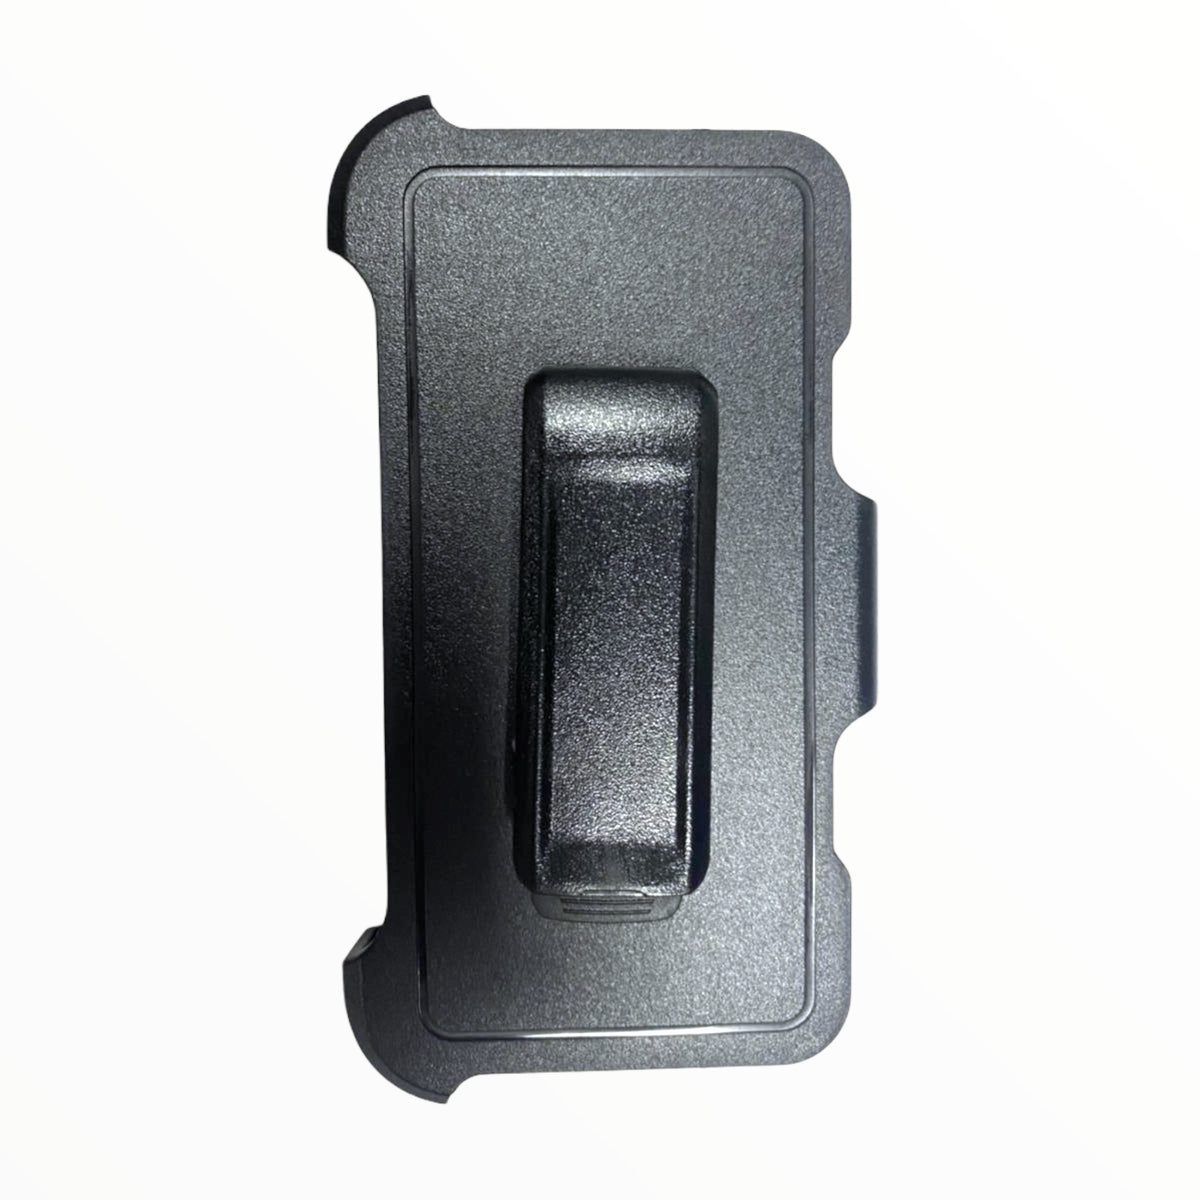 Accesorio el rey clip para estuches otterbox o defender iphone 11 pro max (6.5) color negro